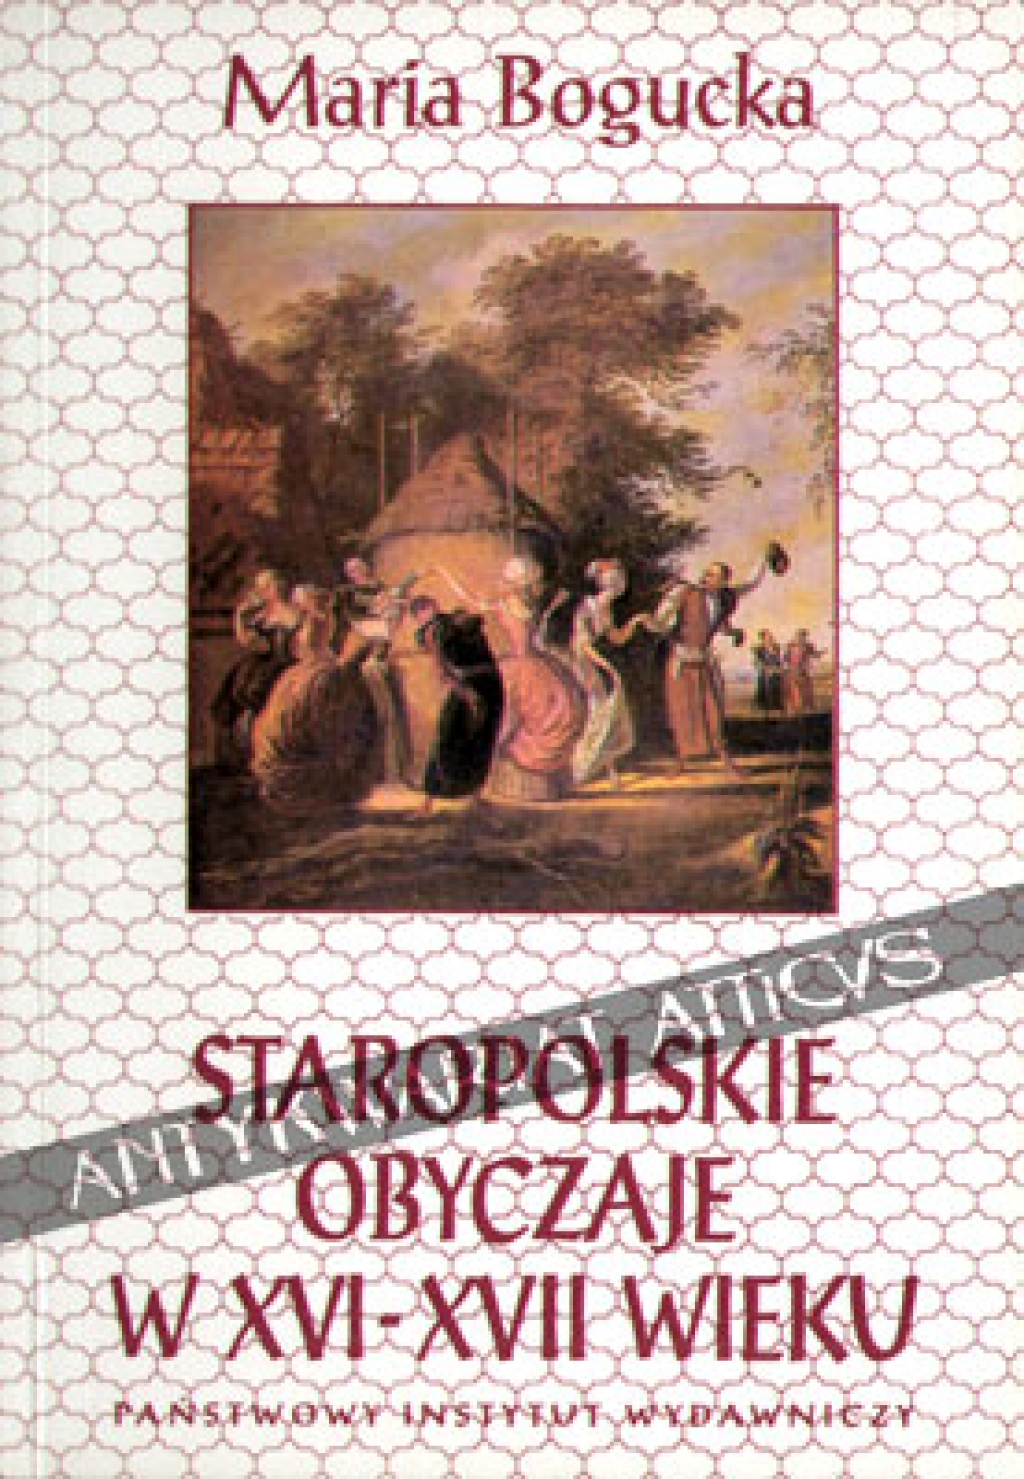 Staropolskie obyczaje w XVI-XVII wieku